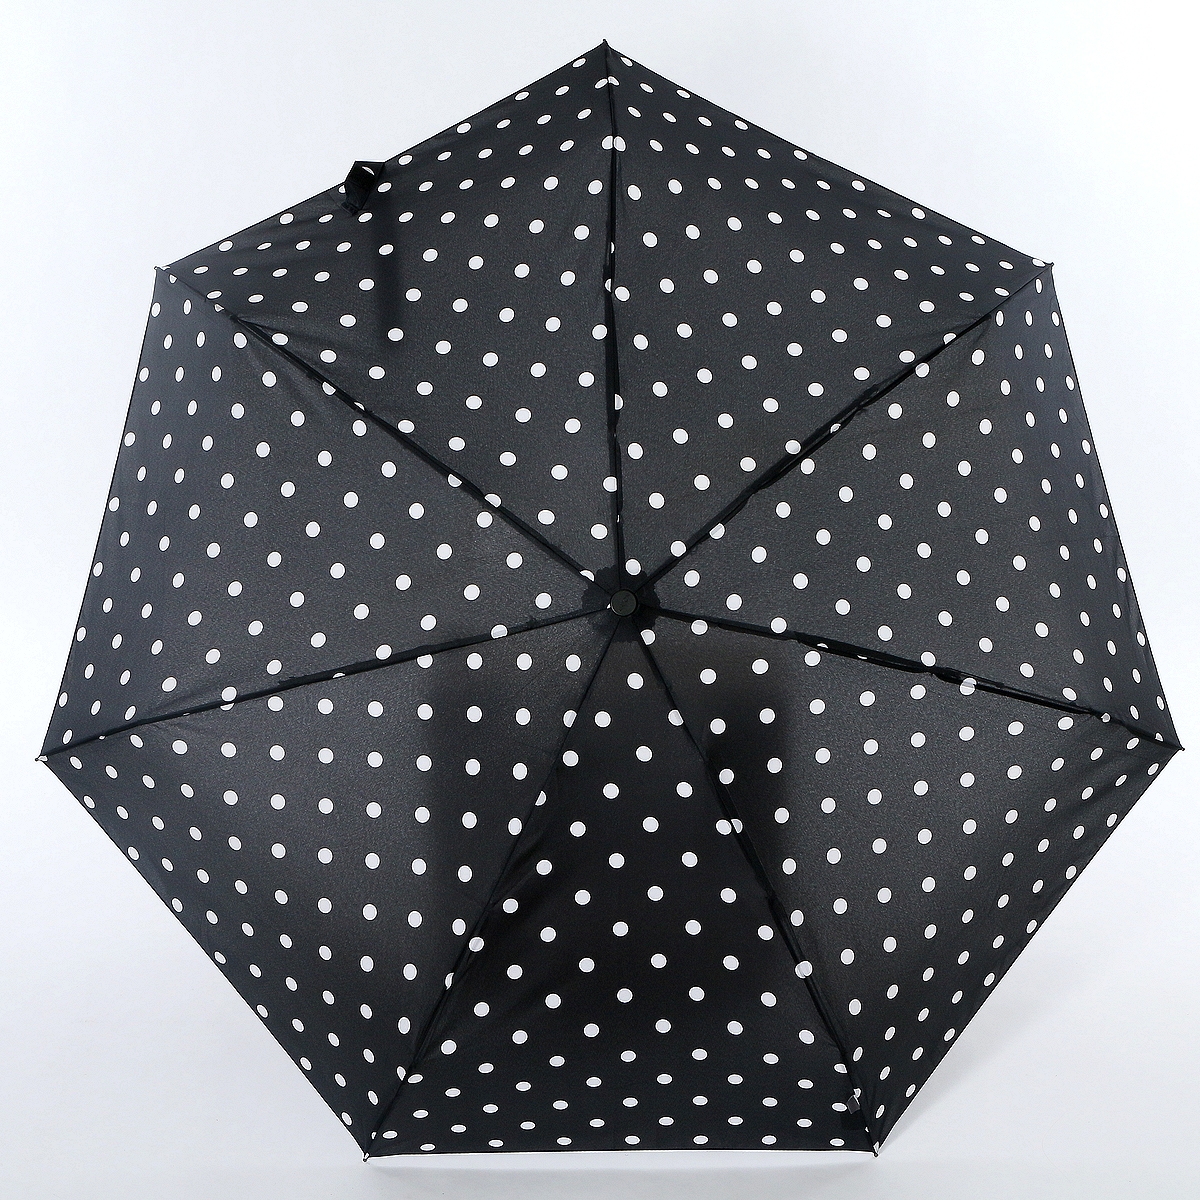 Зонт женский Airton, автомат, 3 сложения, цвет: черный. 4918-110b